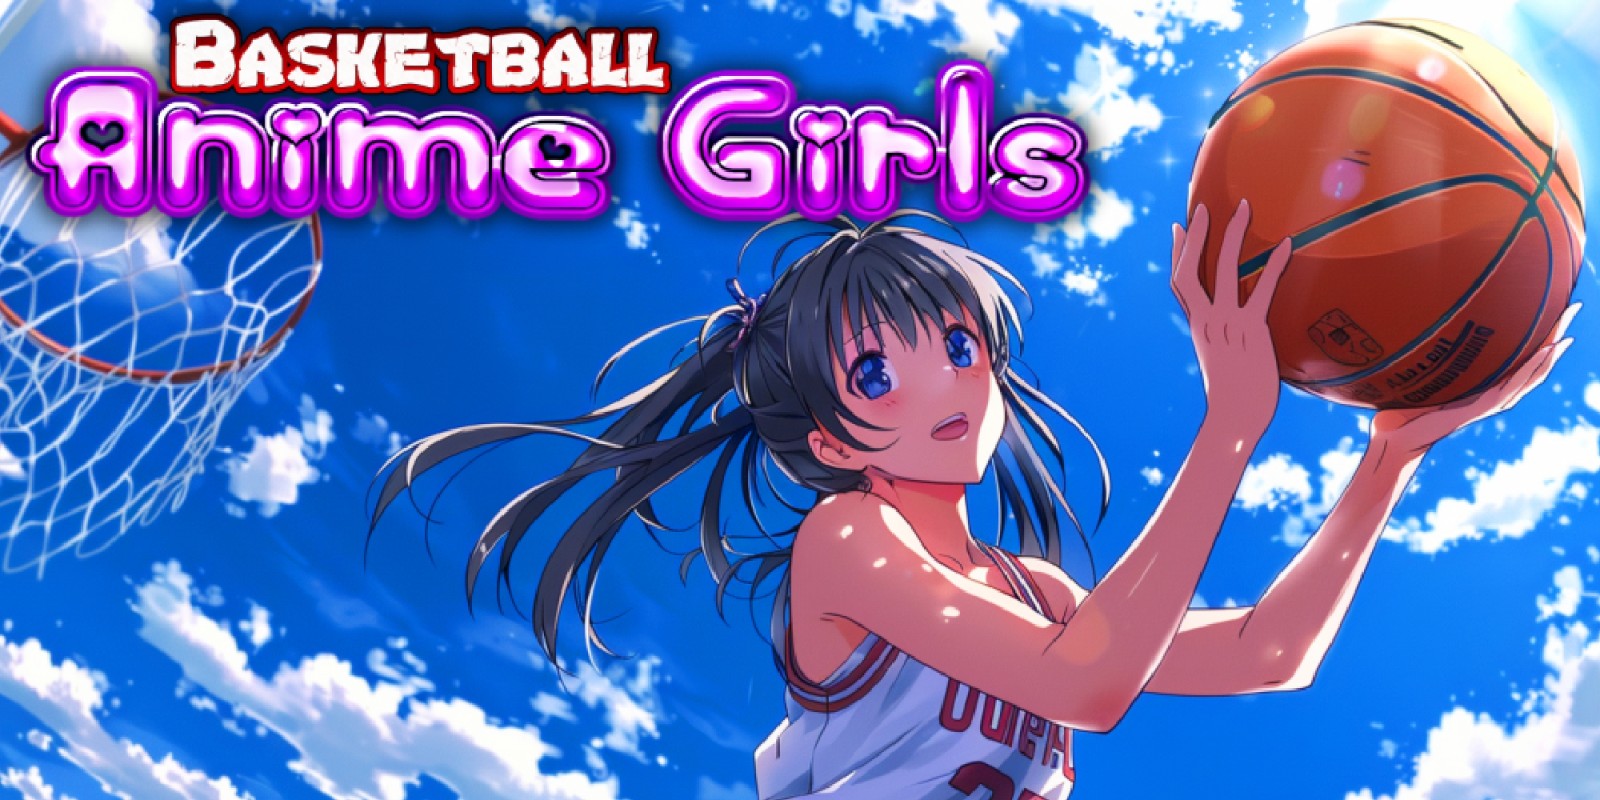 Basketball Anime Girls